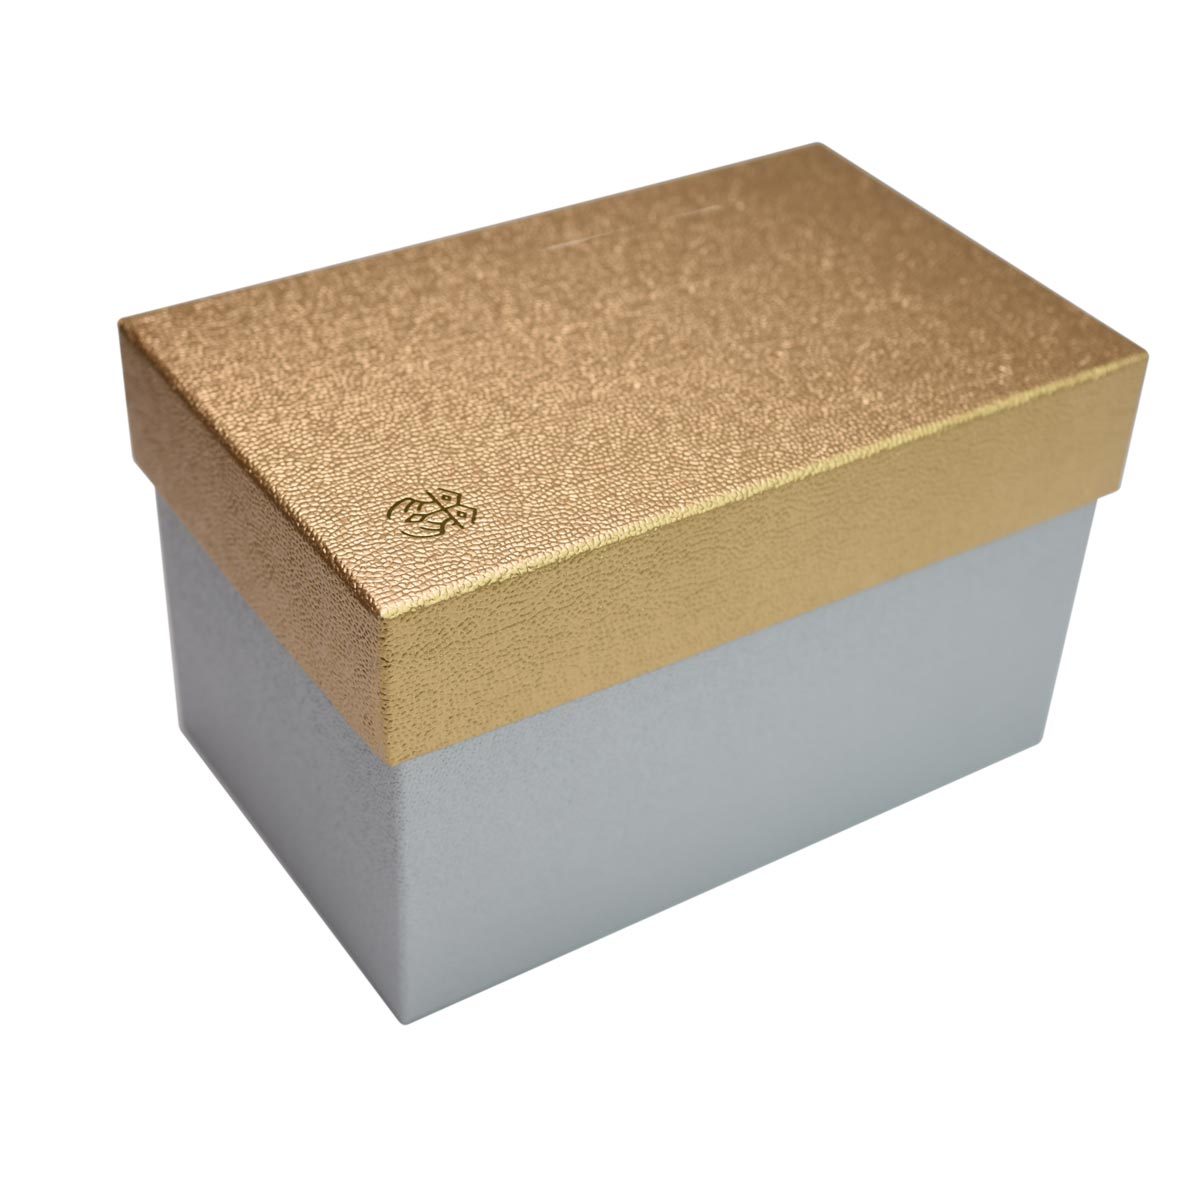 Oshidori Silk Brocade Travel Makeup Bag Gift Box